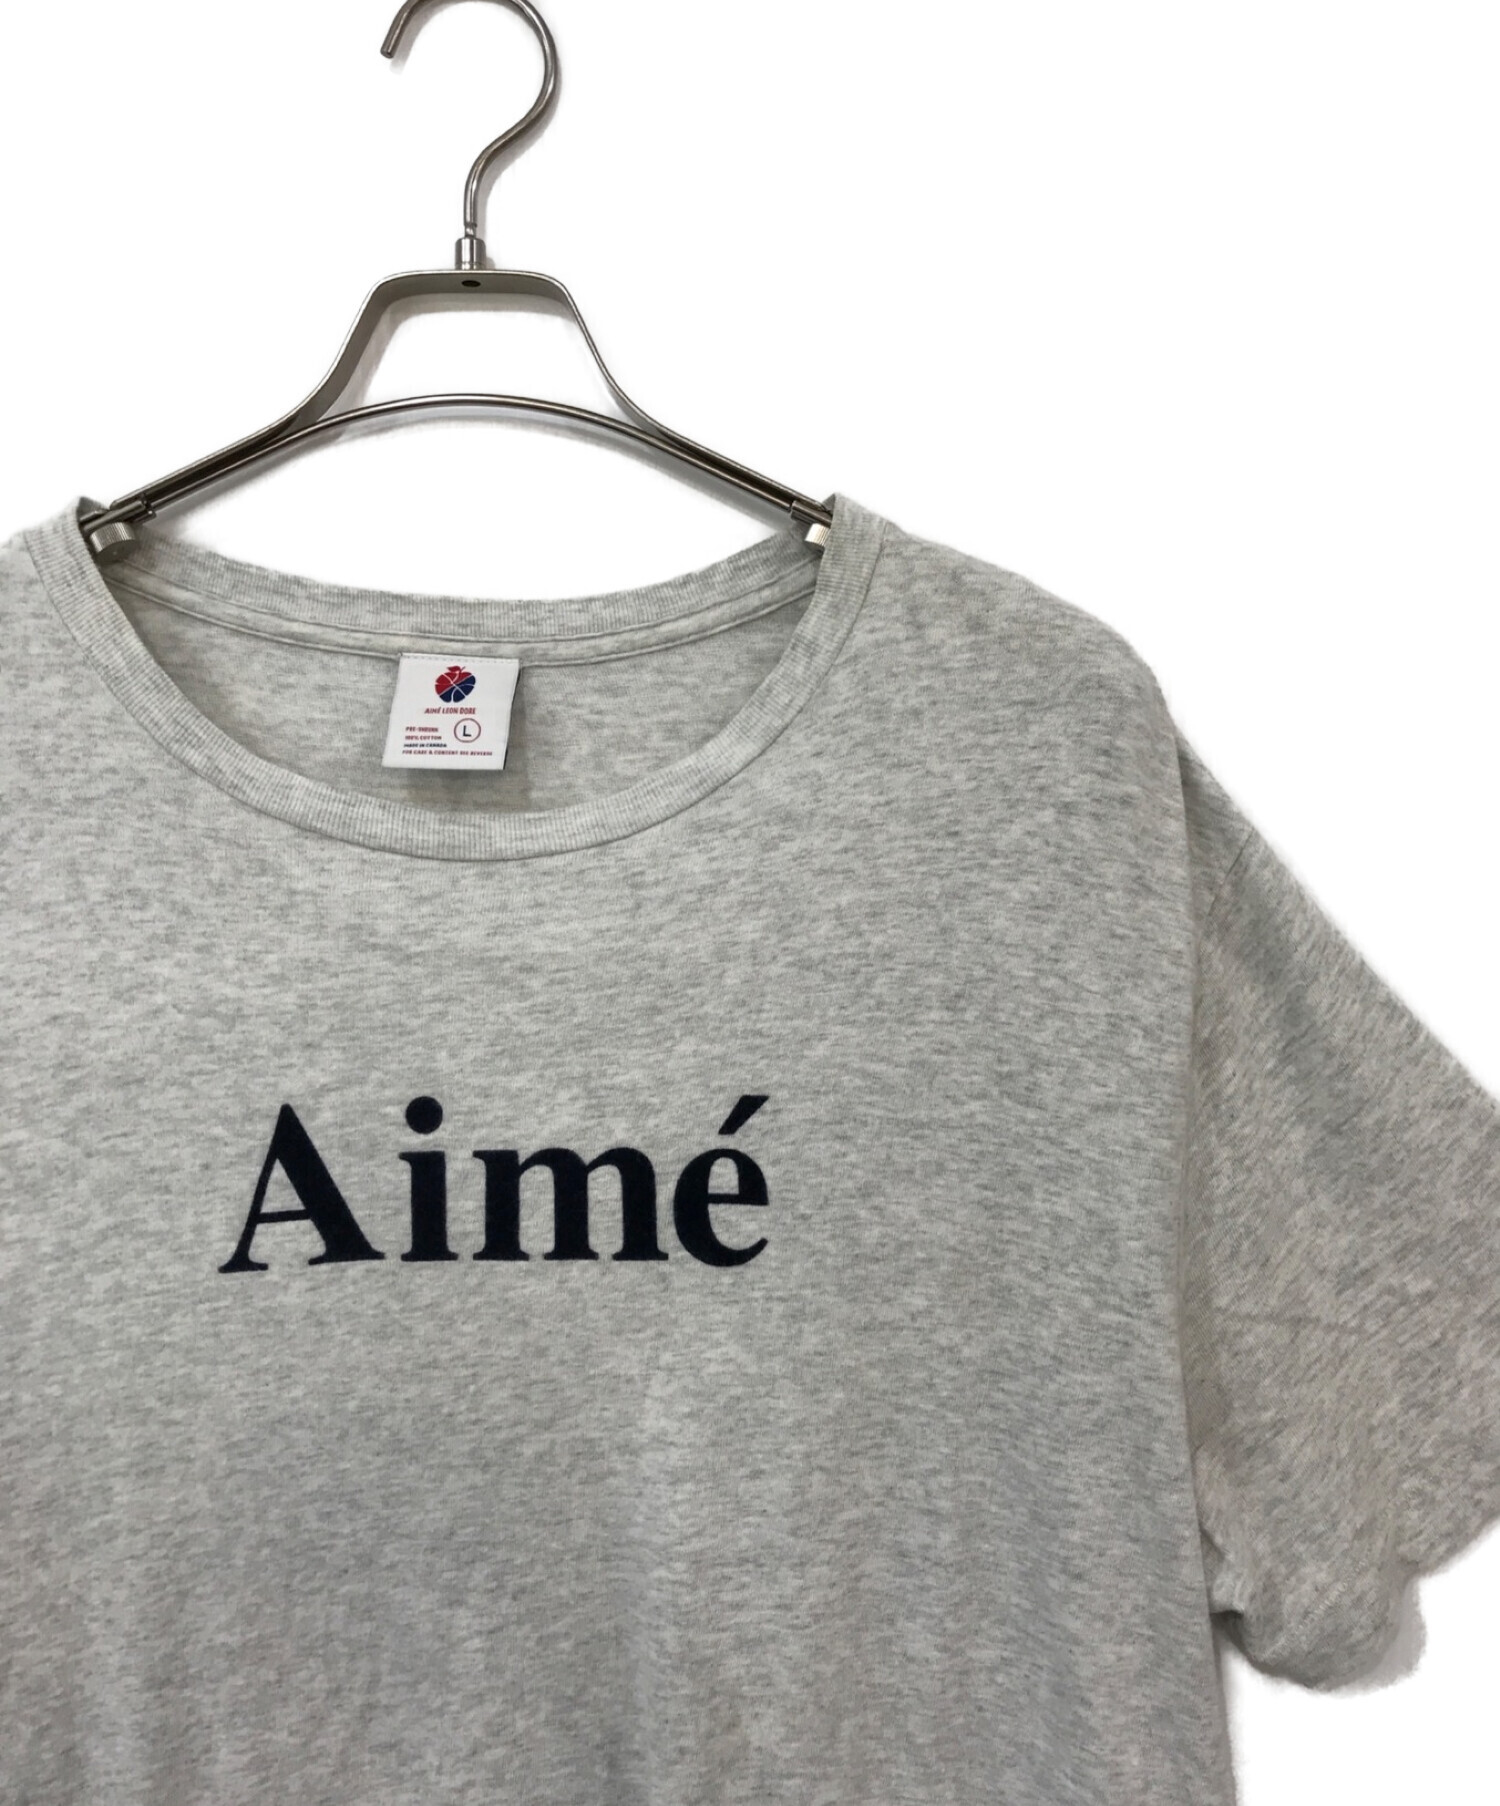 Aime Leon Dore (エメレオンドレ) ロゴTシャツ グレー サイズ:L